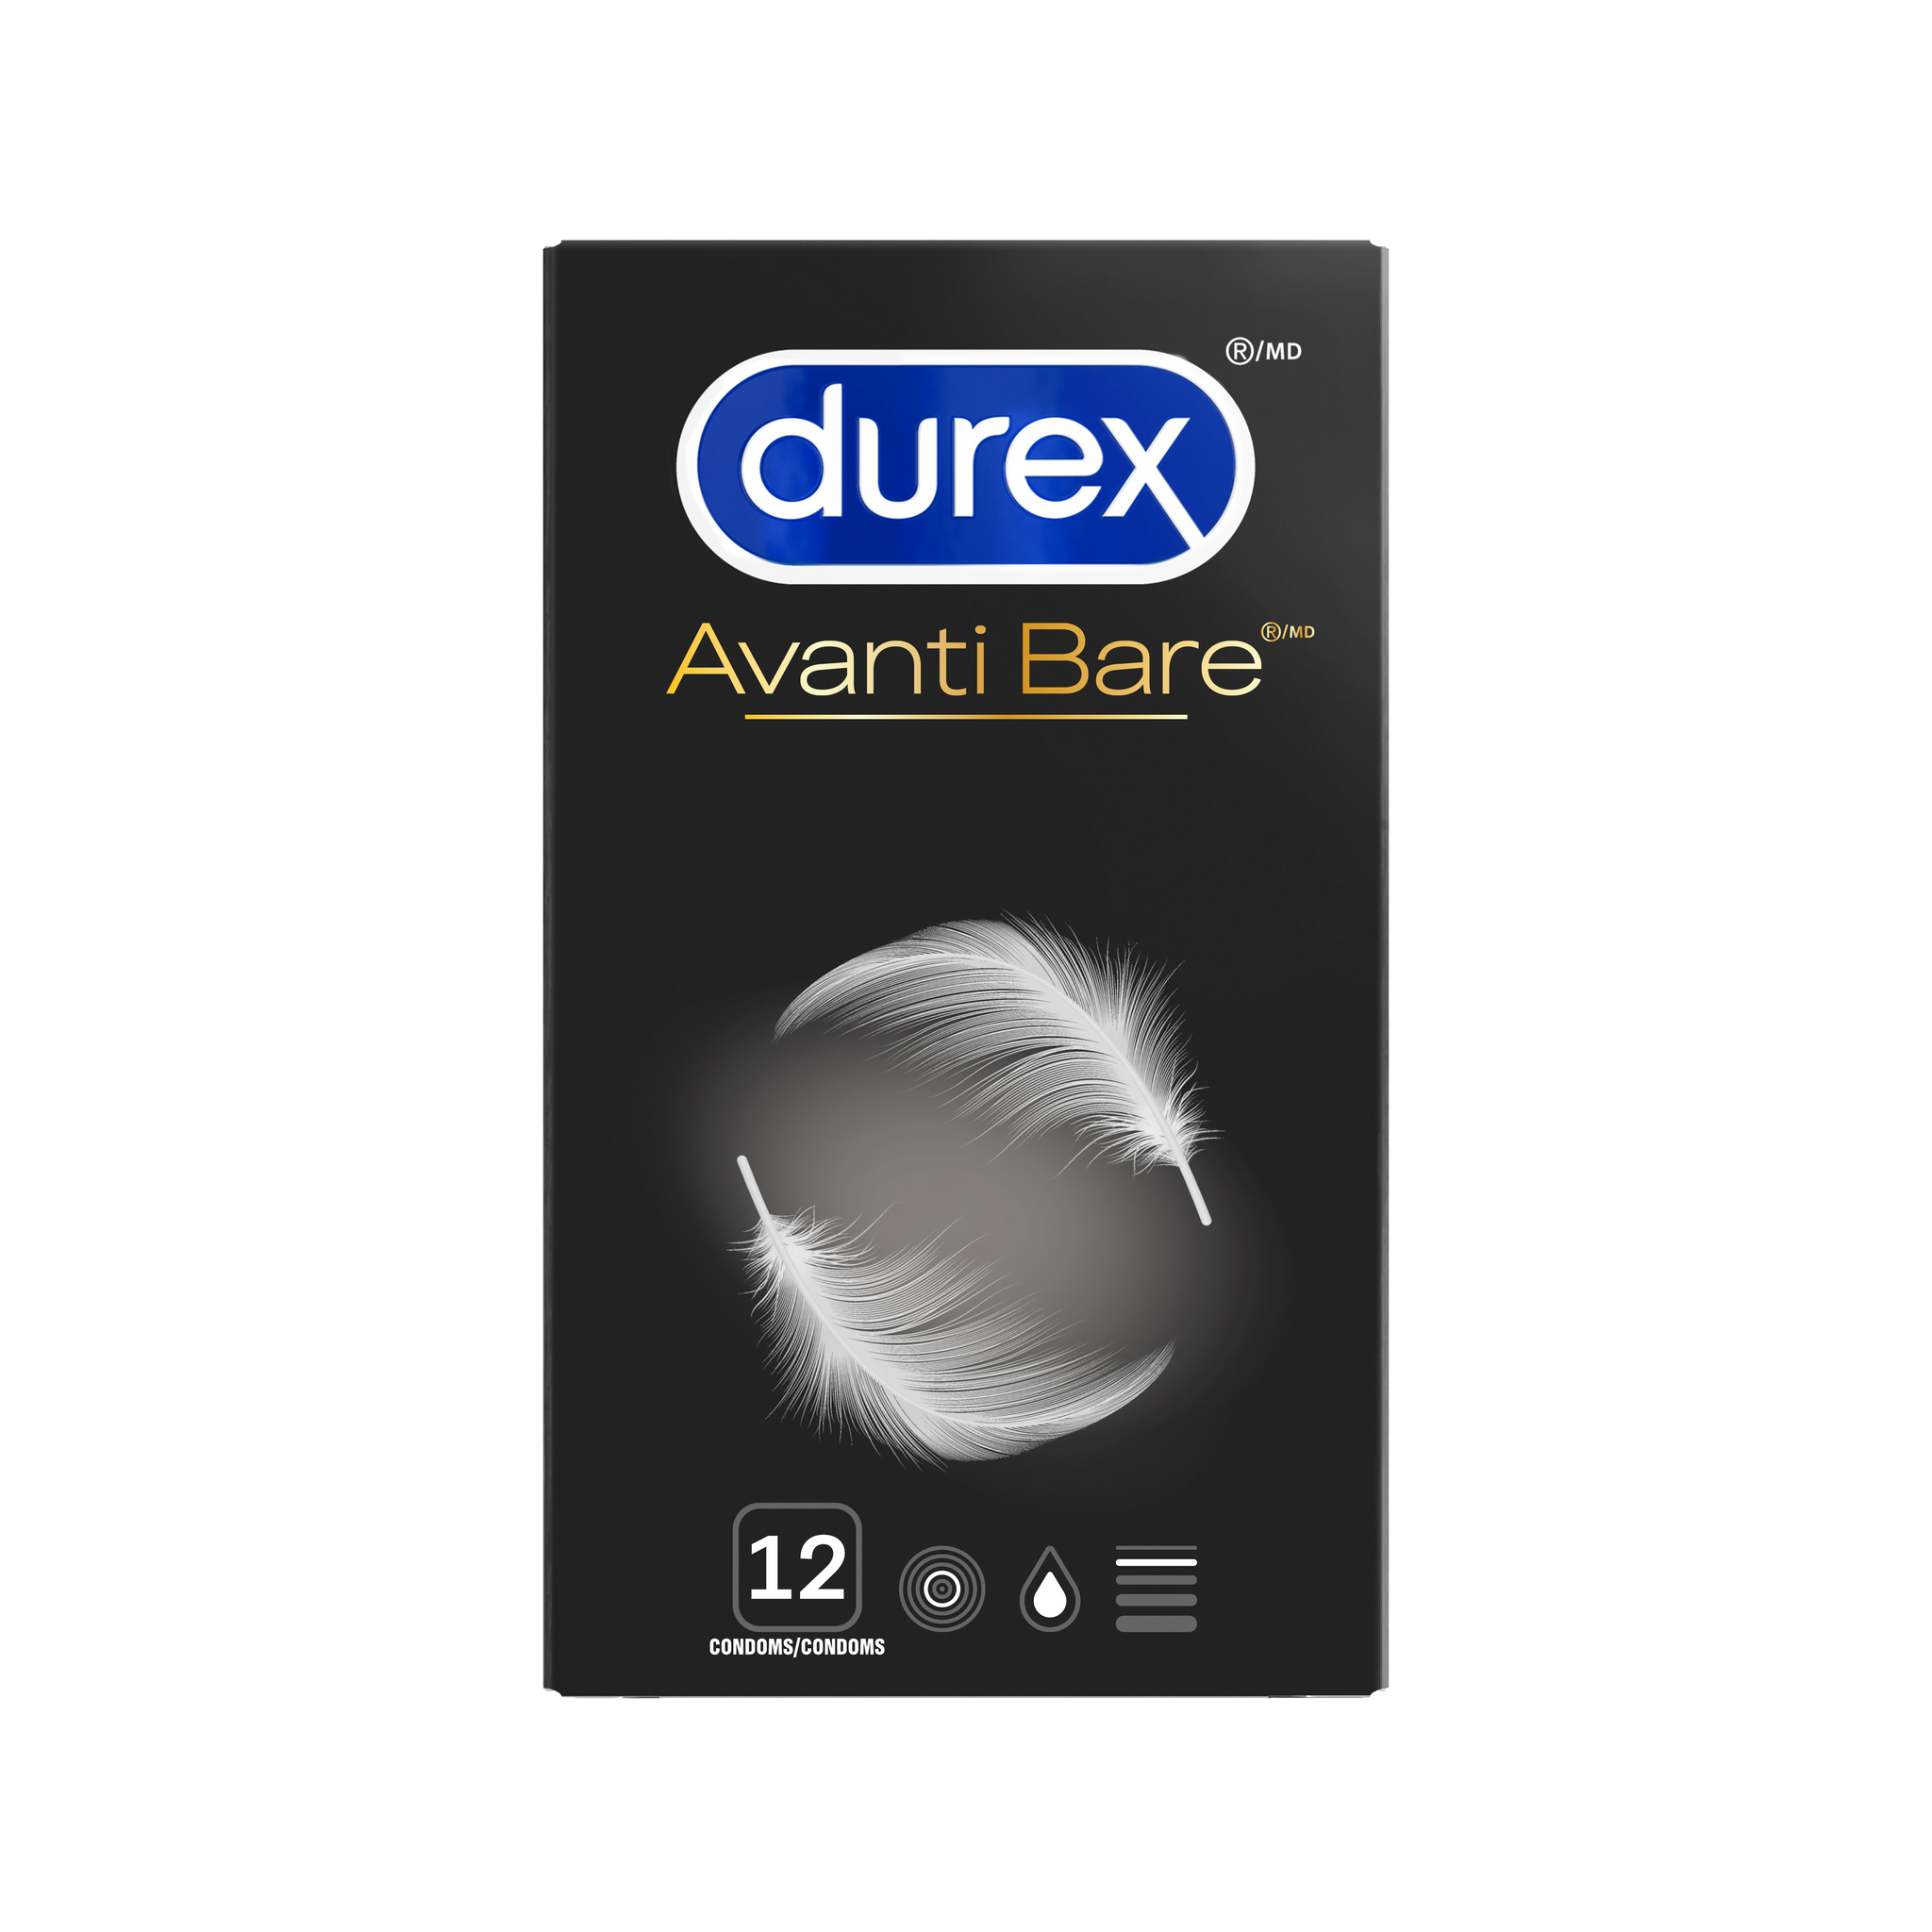 Durex Latex Free Condoms